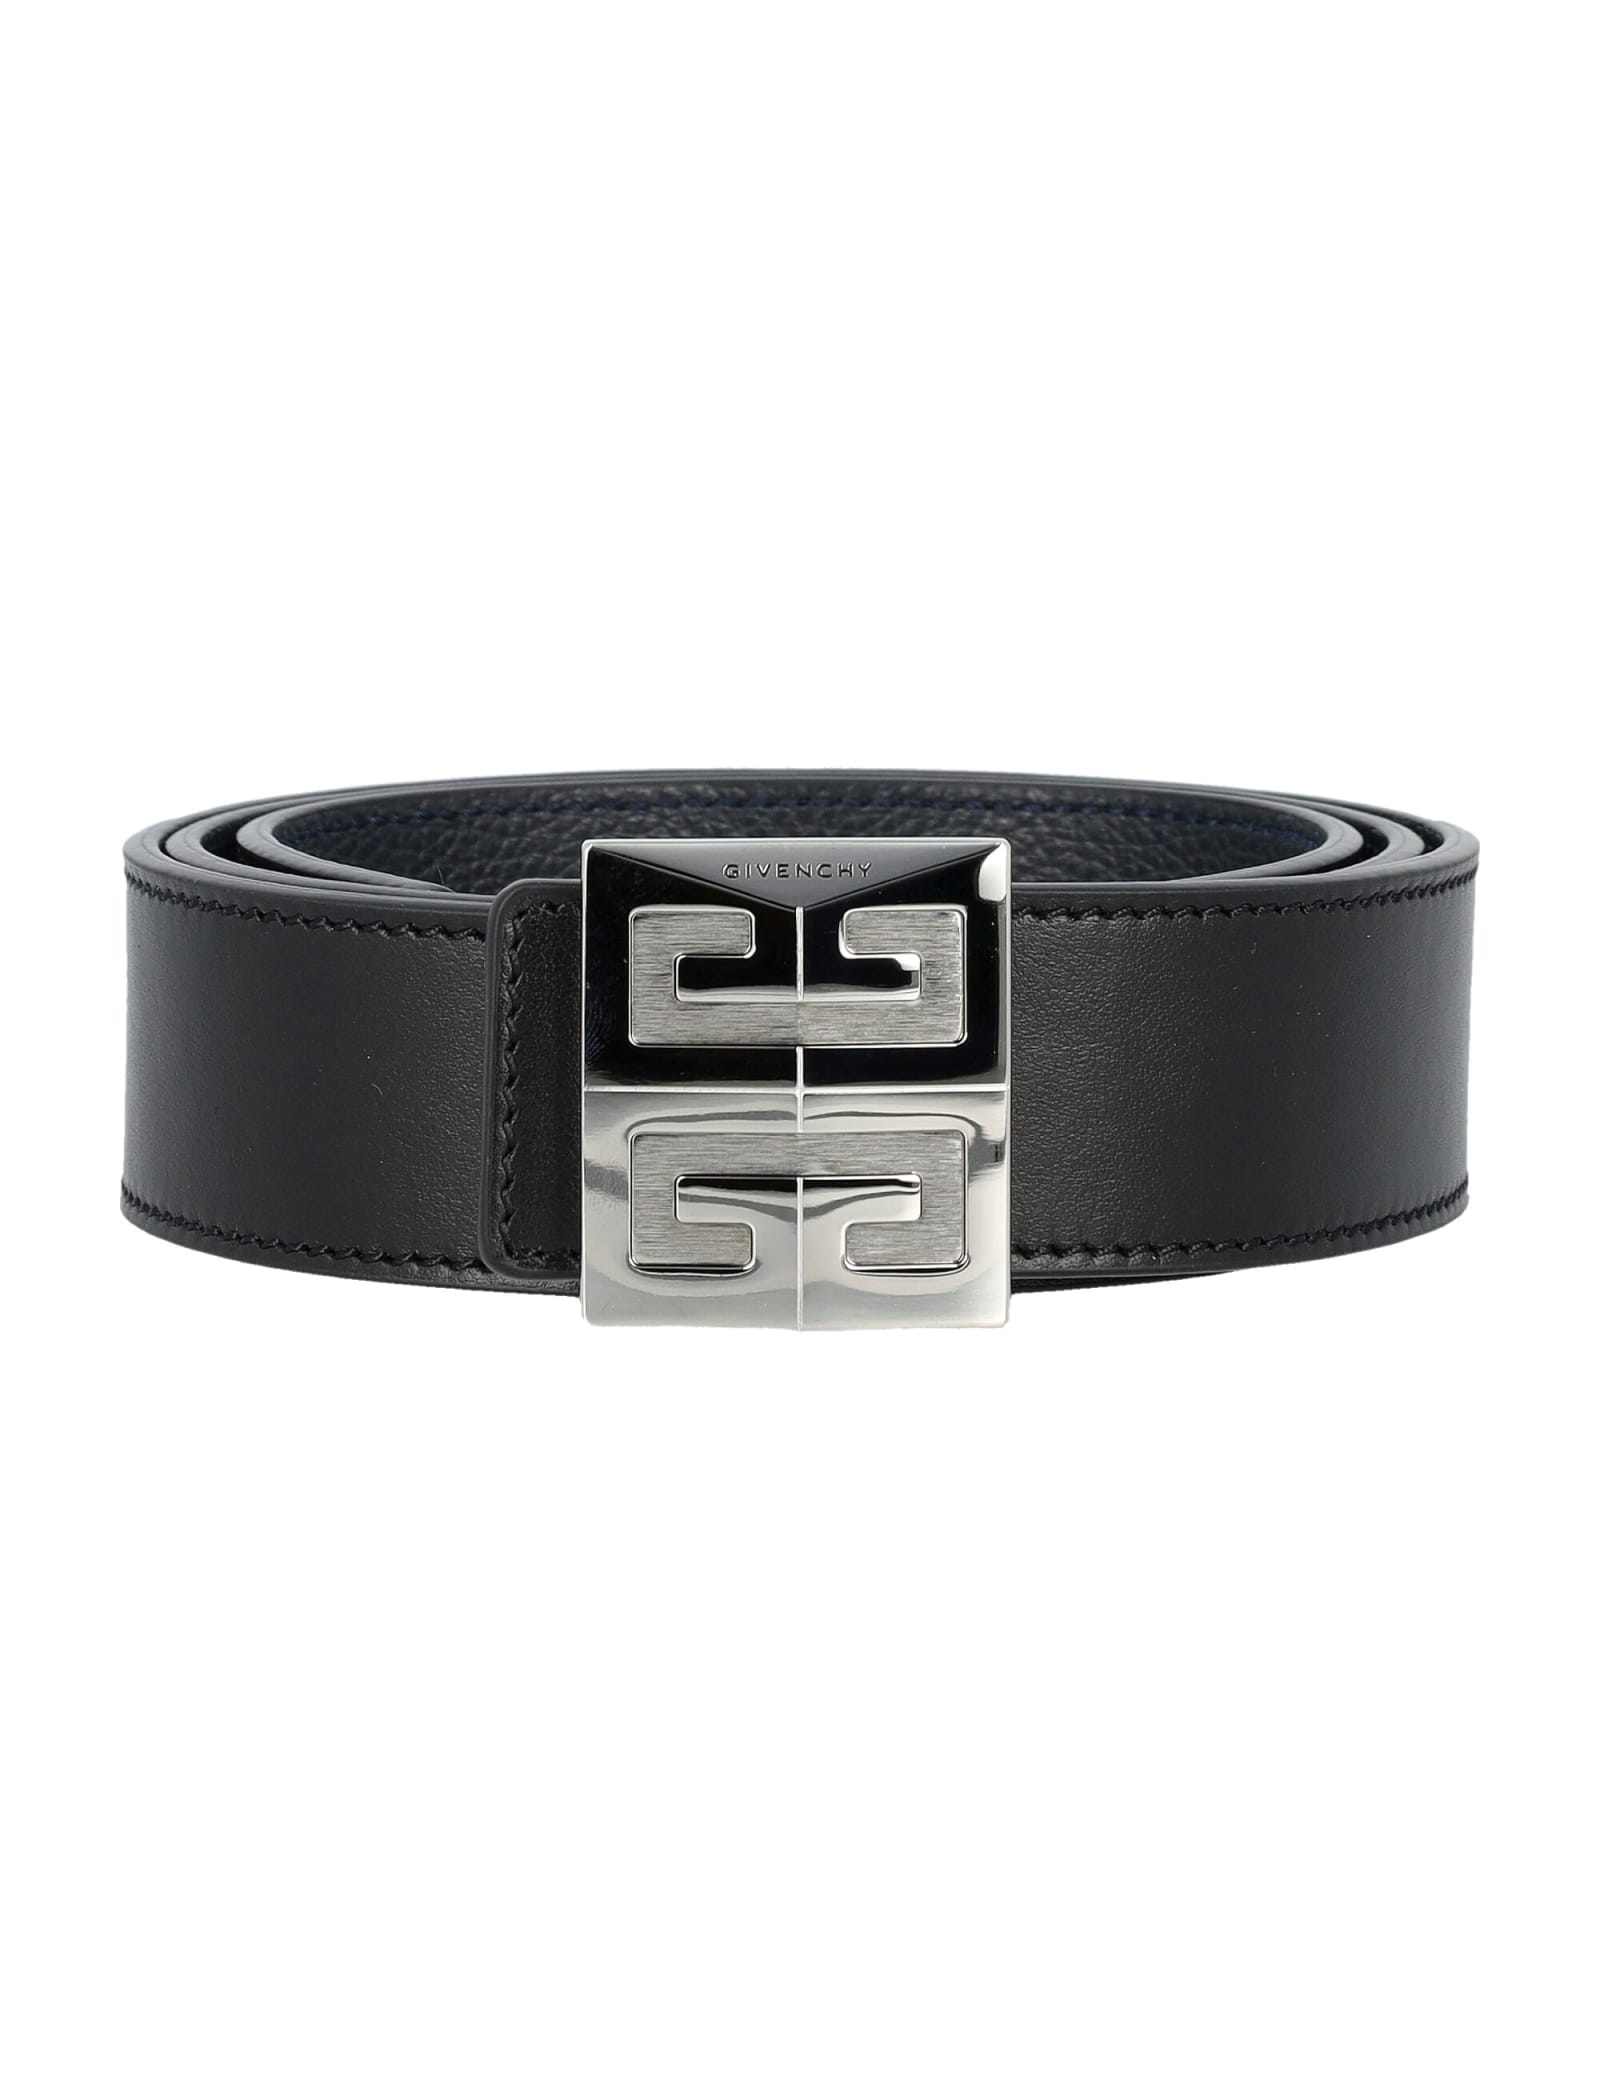 Givenchy 4g Reversible Belt In Black/dark_blue